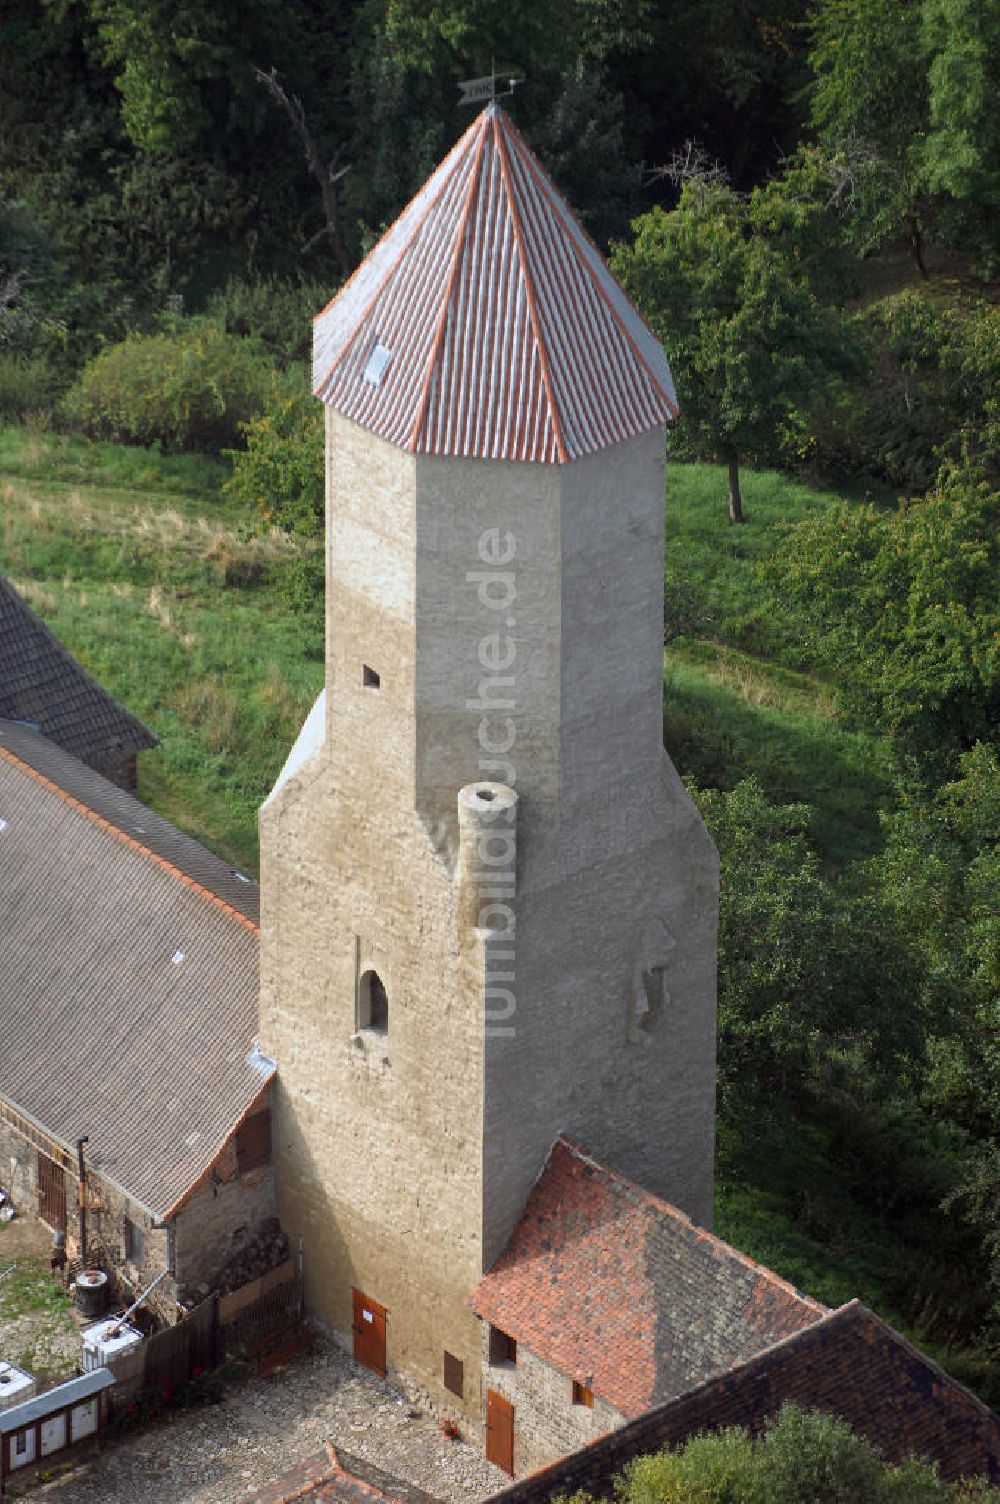 Luftbild Freckleben - Blick auf die Burg Freckleben im gleichnamigen Stadtteil von Aschersleben